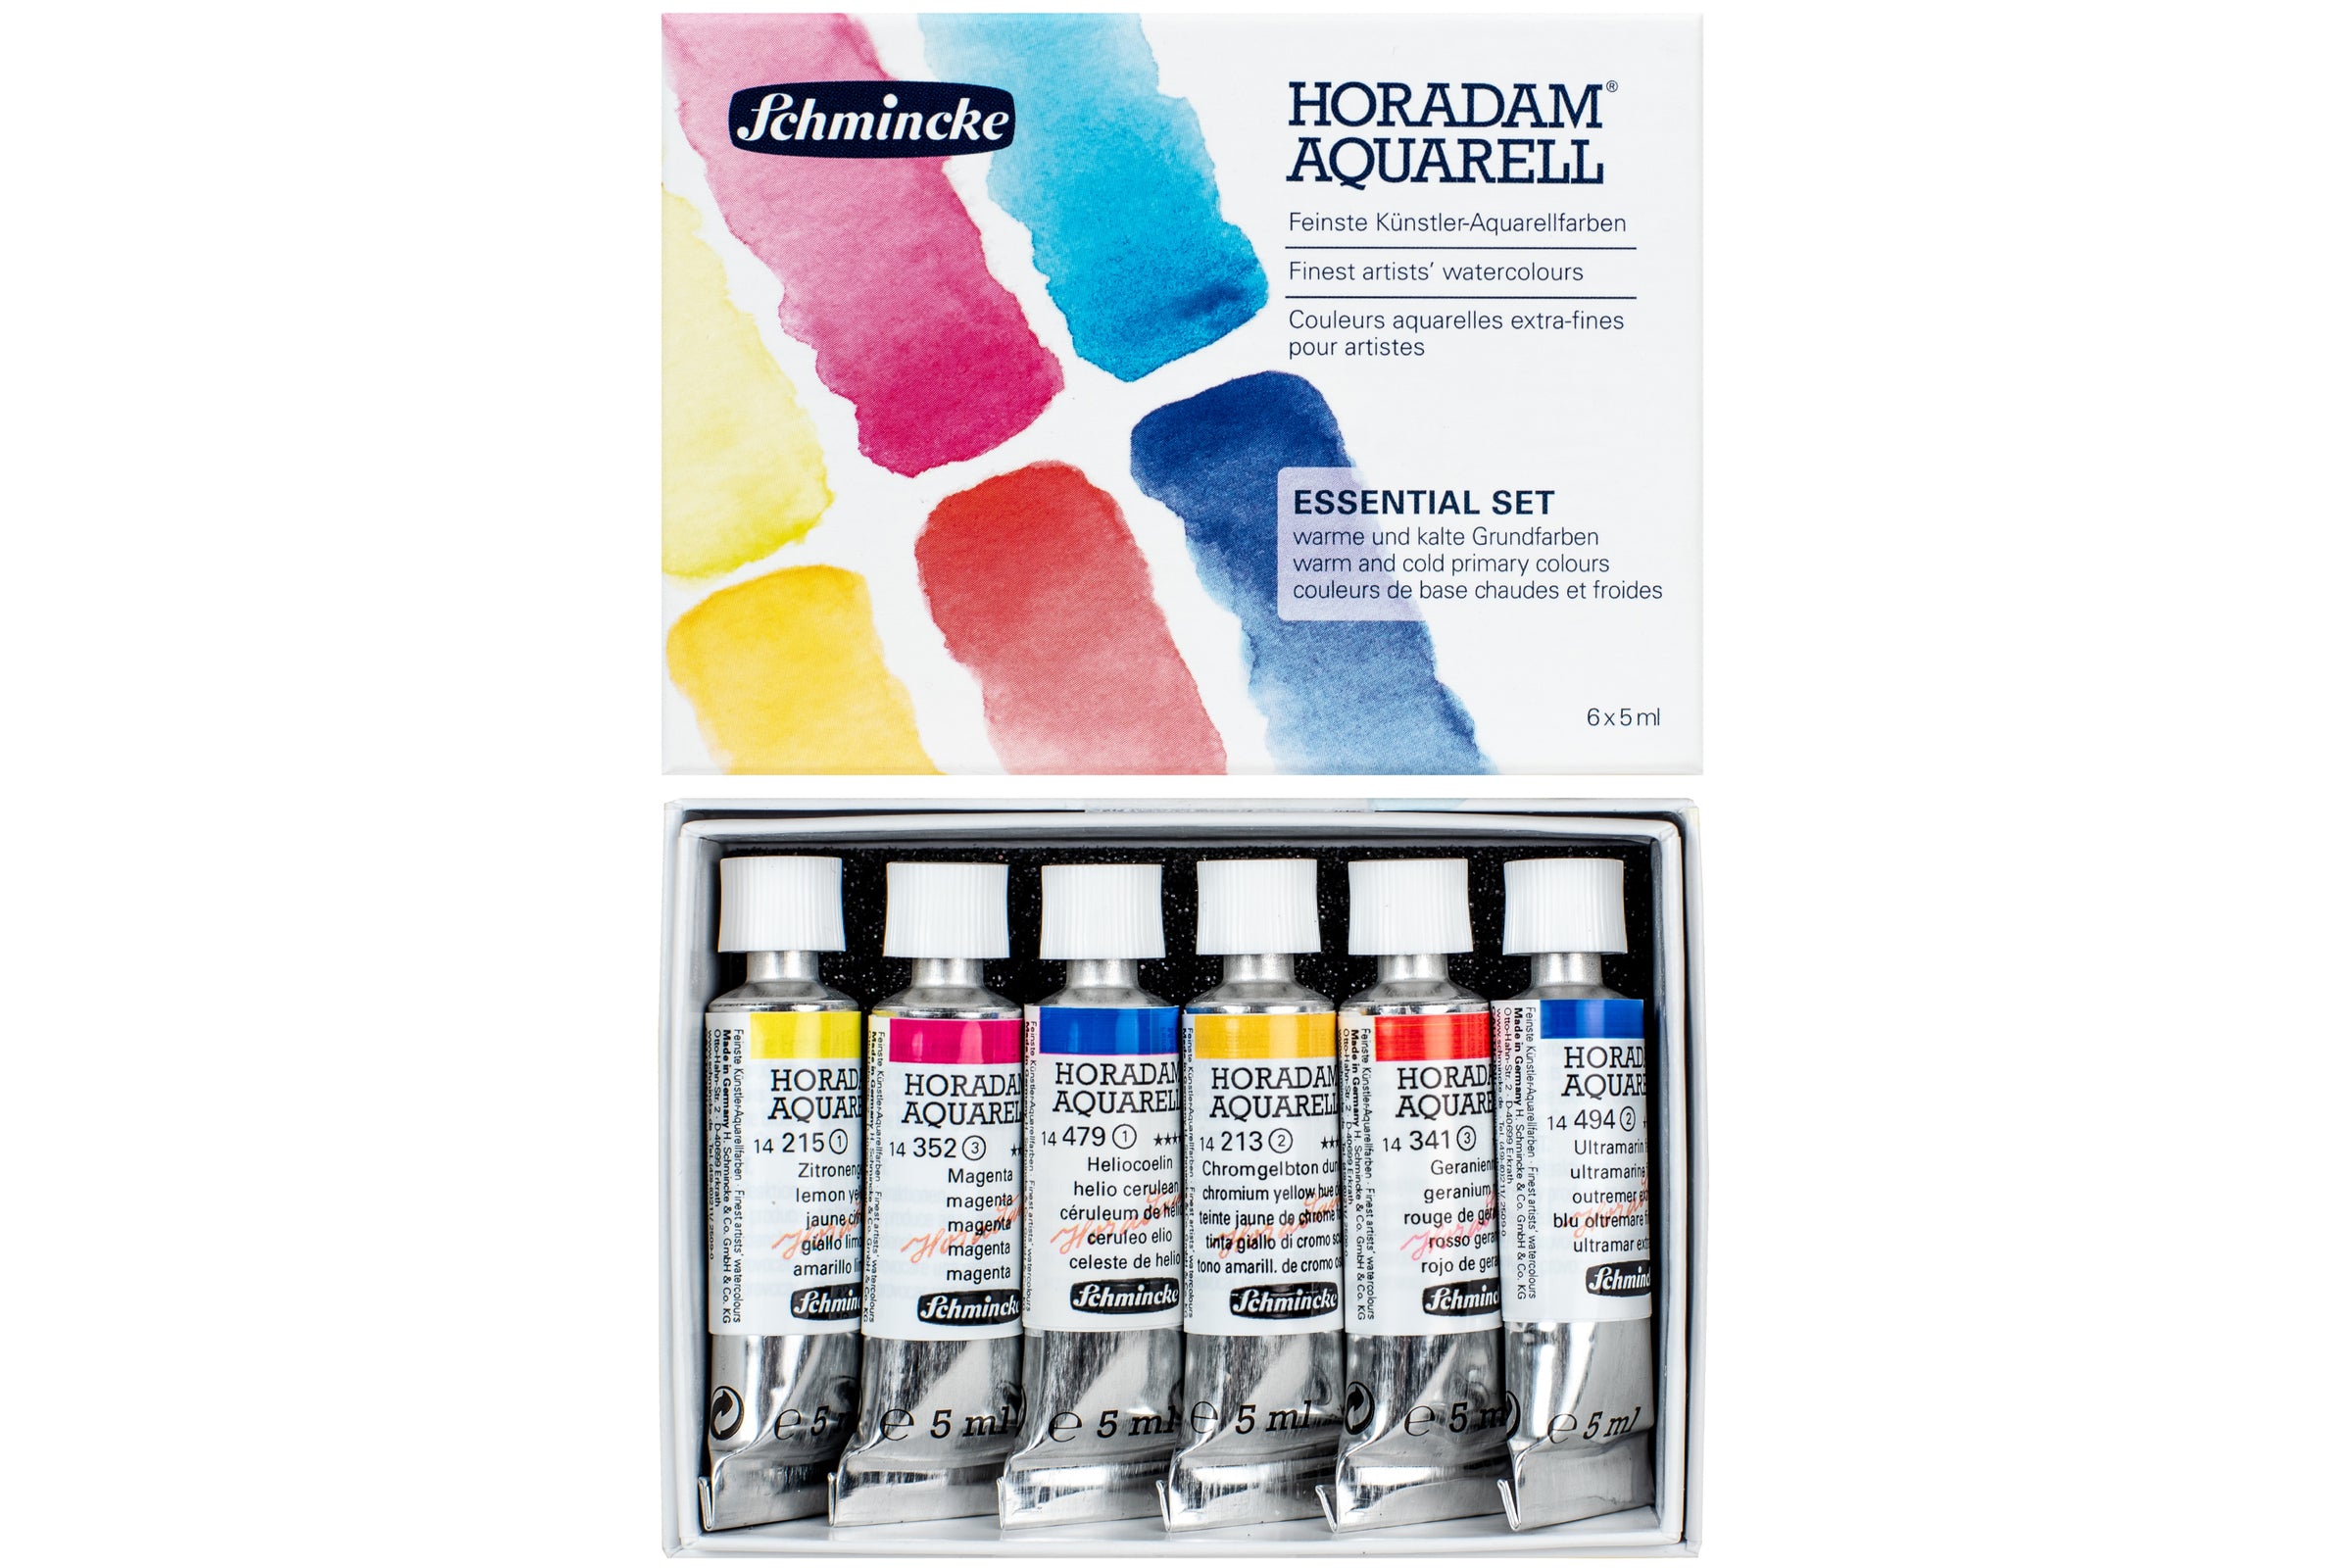  Schmincke - HORADAM® AQUARELL Premium color box with 47 colors,  ONetz and porcelain palette, 74548097, wooden box, painting set, finest  watercolors, 47 x 1/2 pans